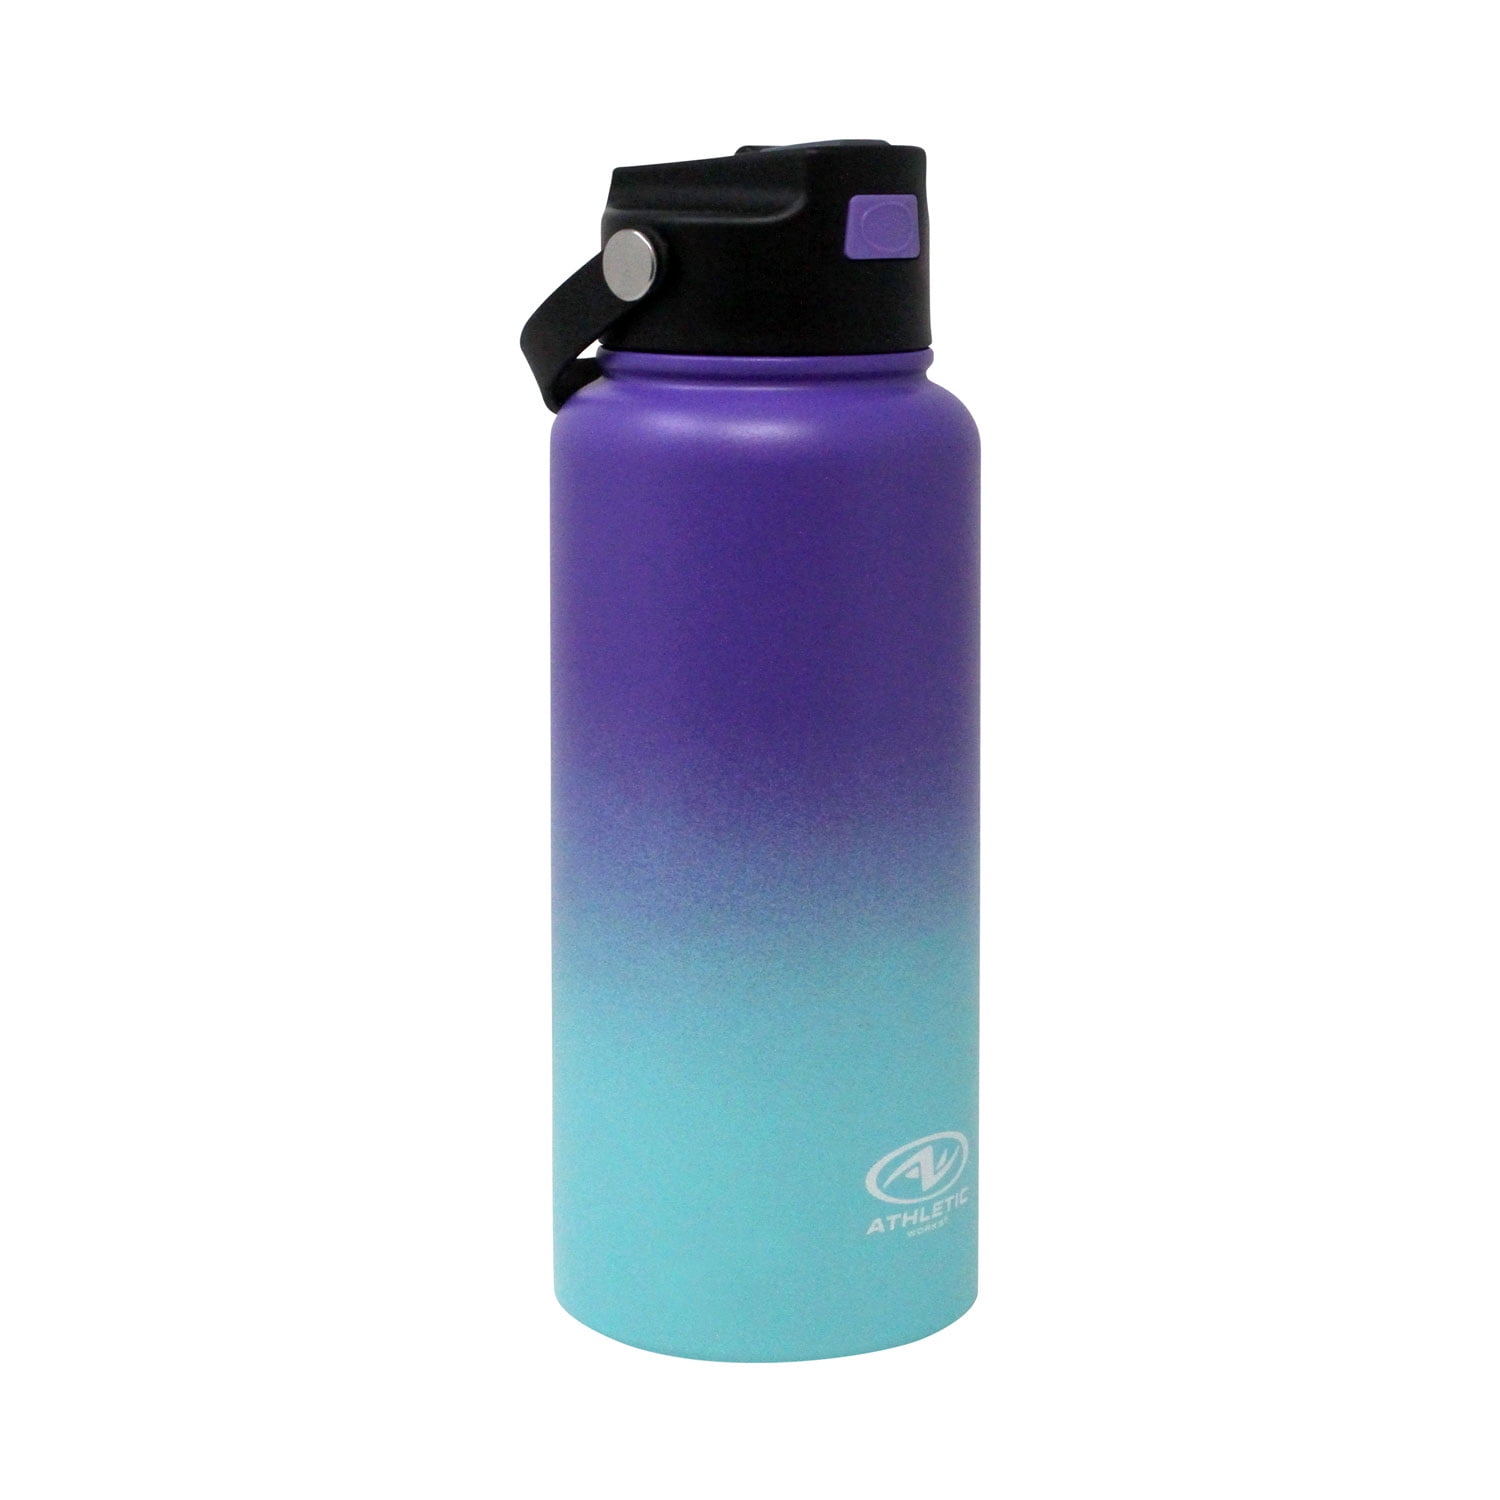 Water Bottle – Assault Fitness